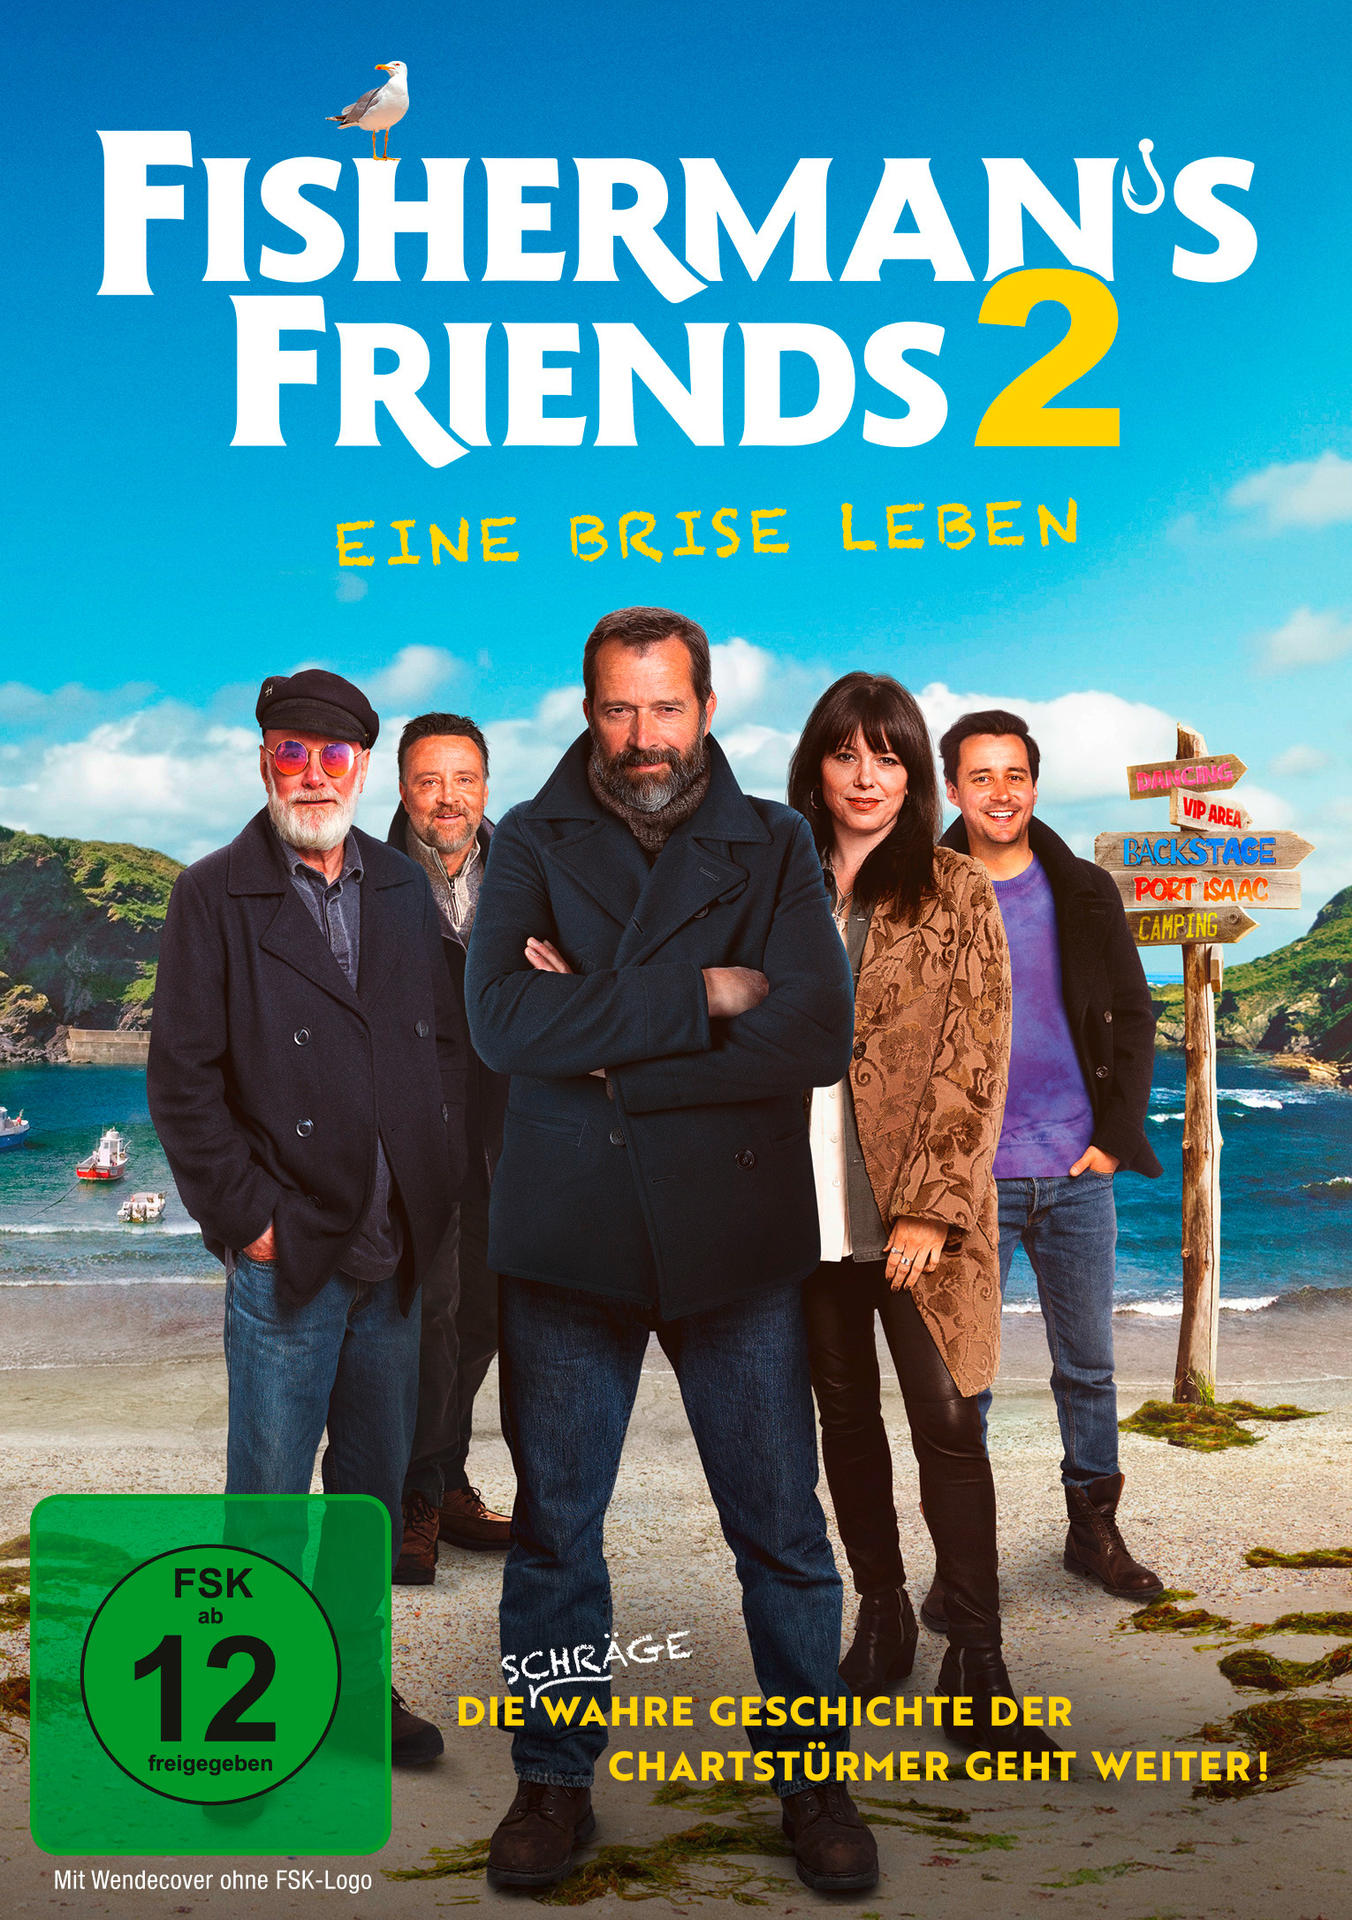 Fisherman\'s Friends Leben DVD Brise 2-Eine